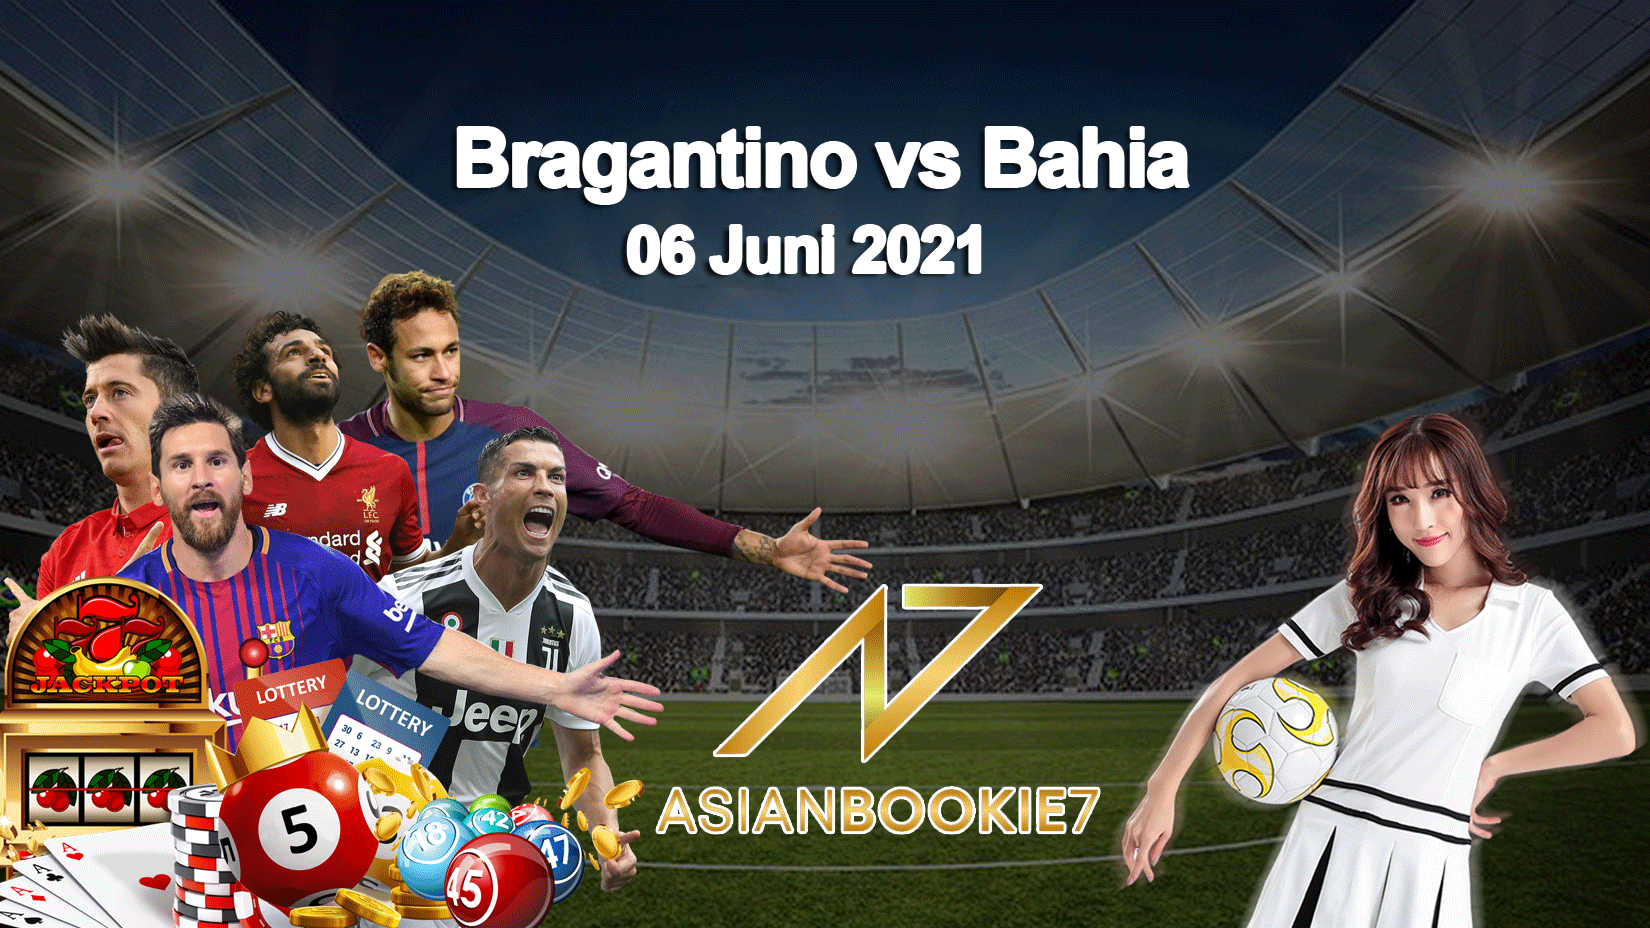 Prediksi Bragantino vs Bahia 06 Juni 2021